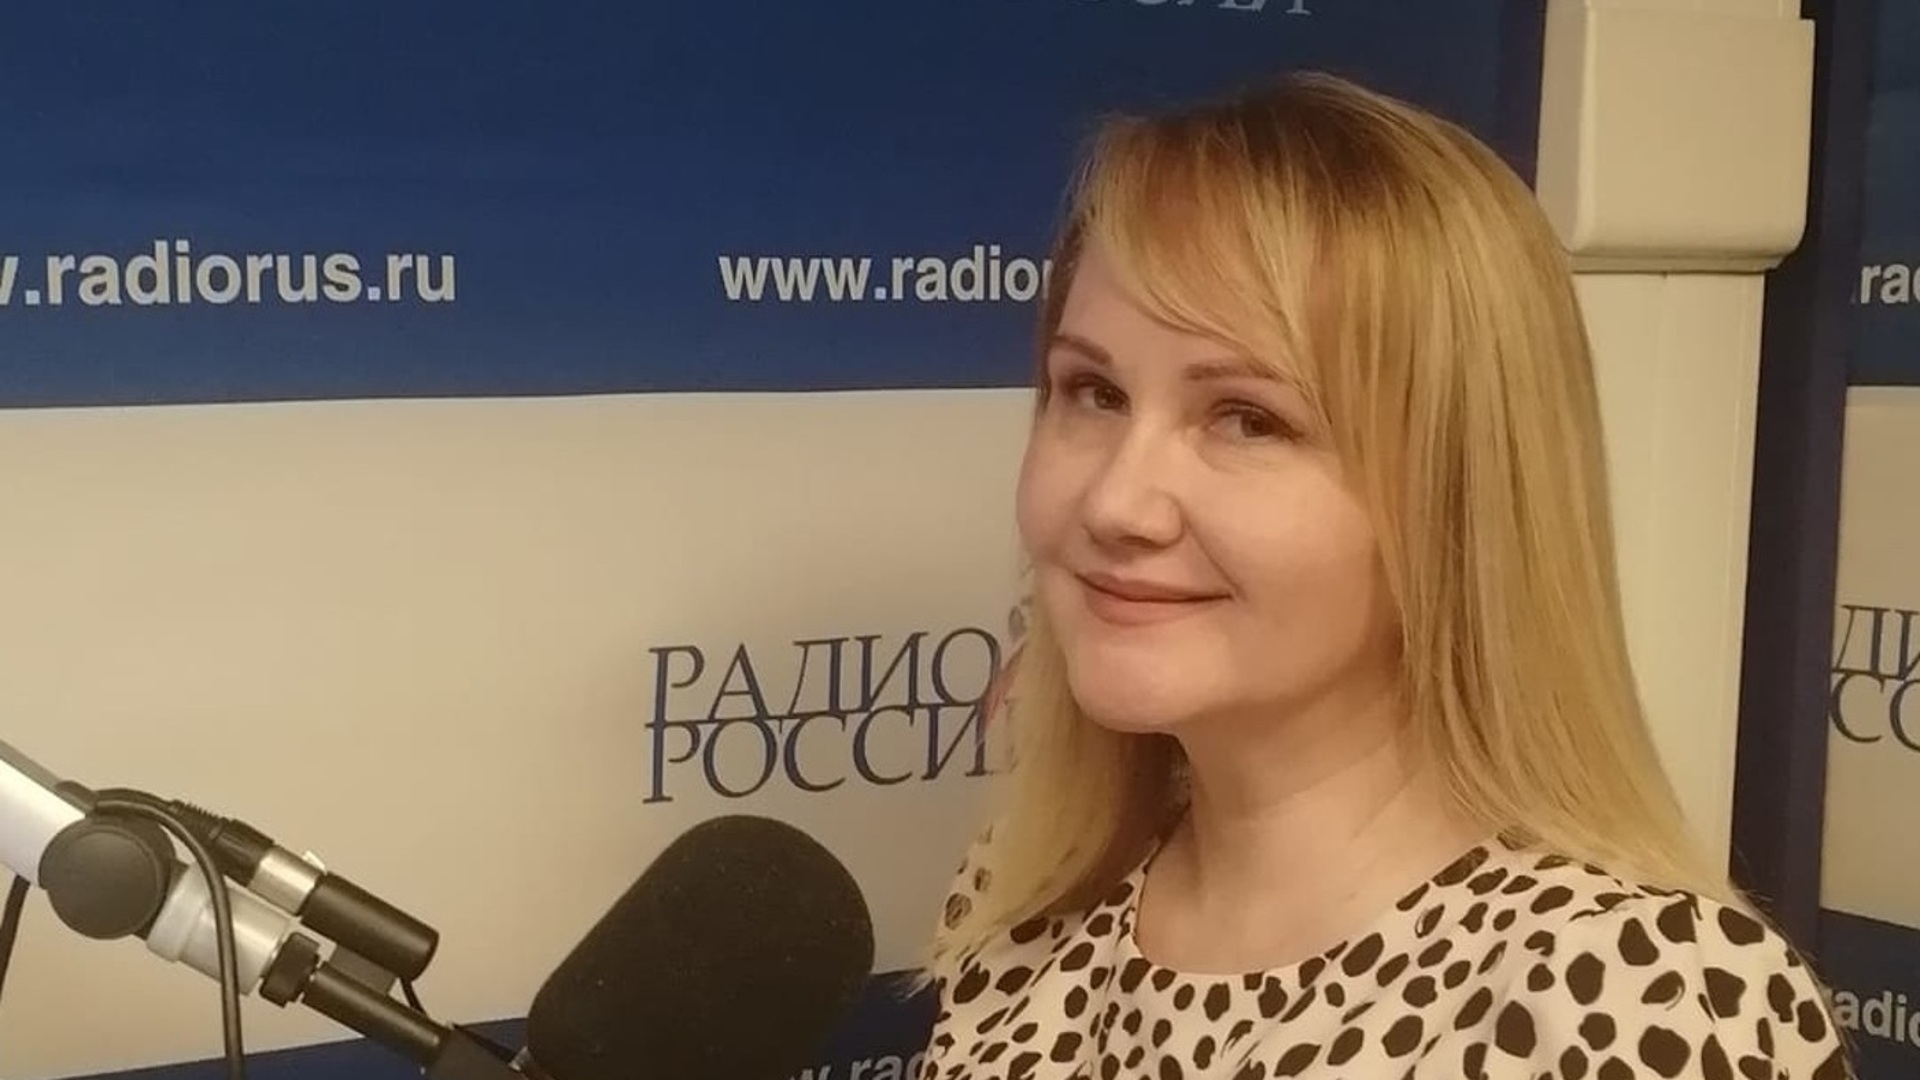 Наталья сергеева радио россии фото биография